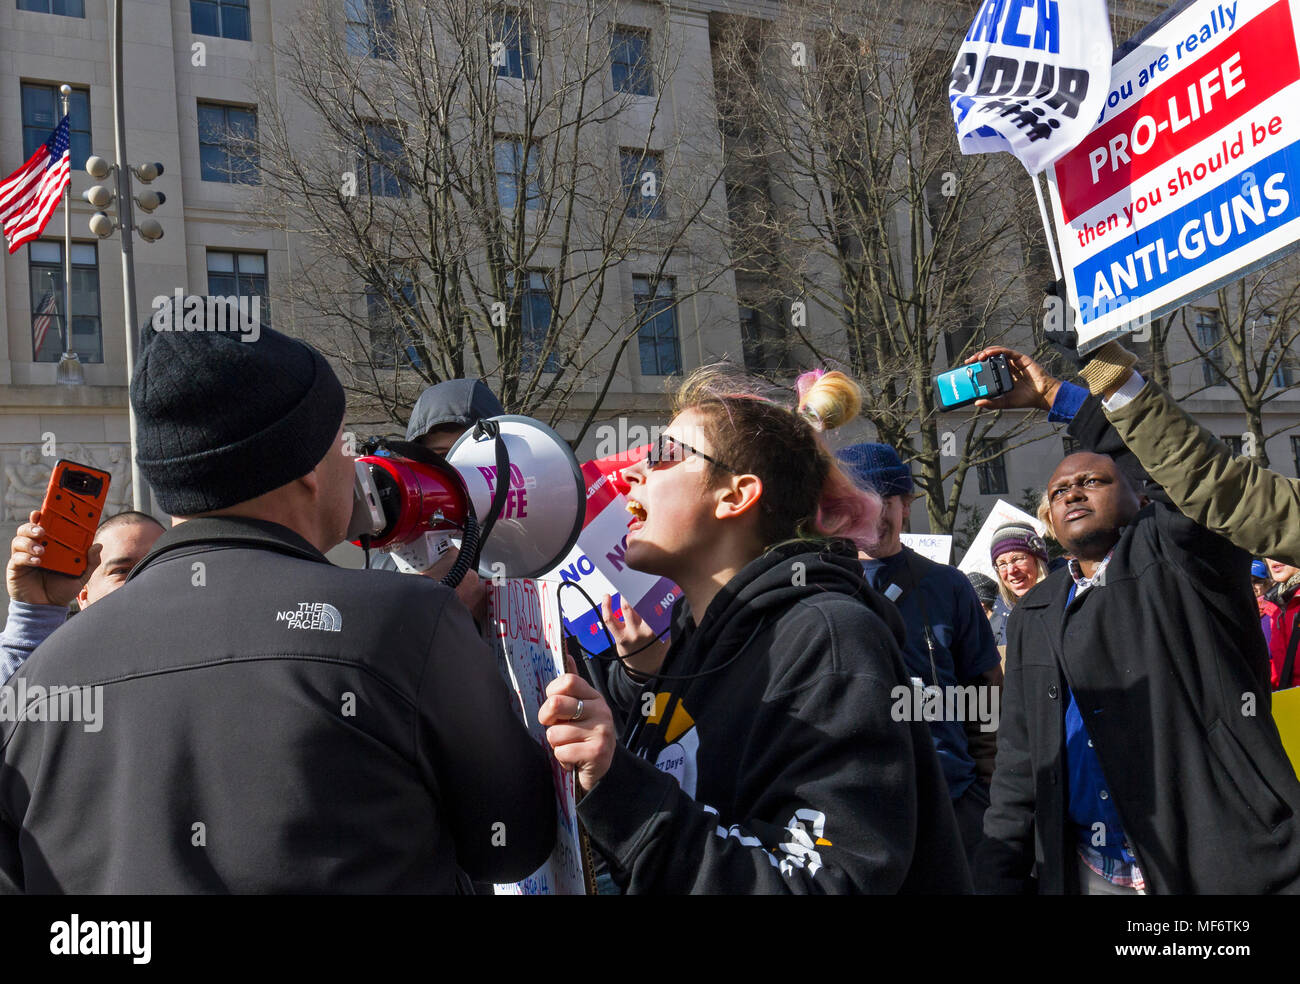 Encolerizados manifestantes enfrentan una defensora pro vida solitaria durante la Marcha por Nuestras Vidas manifestación contra la violencia de las armas de fuego el 24 de marzo de 2018, en Washington, DC. Foto de stock